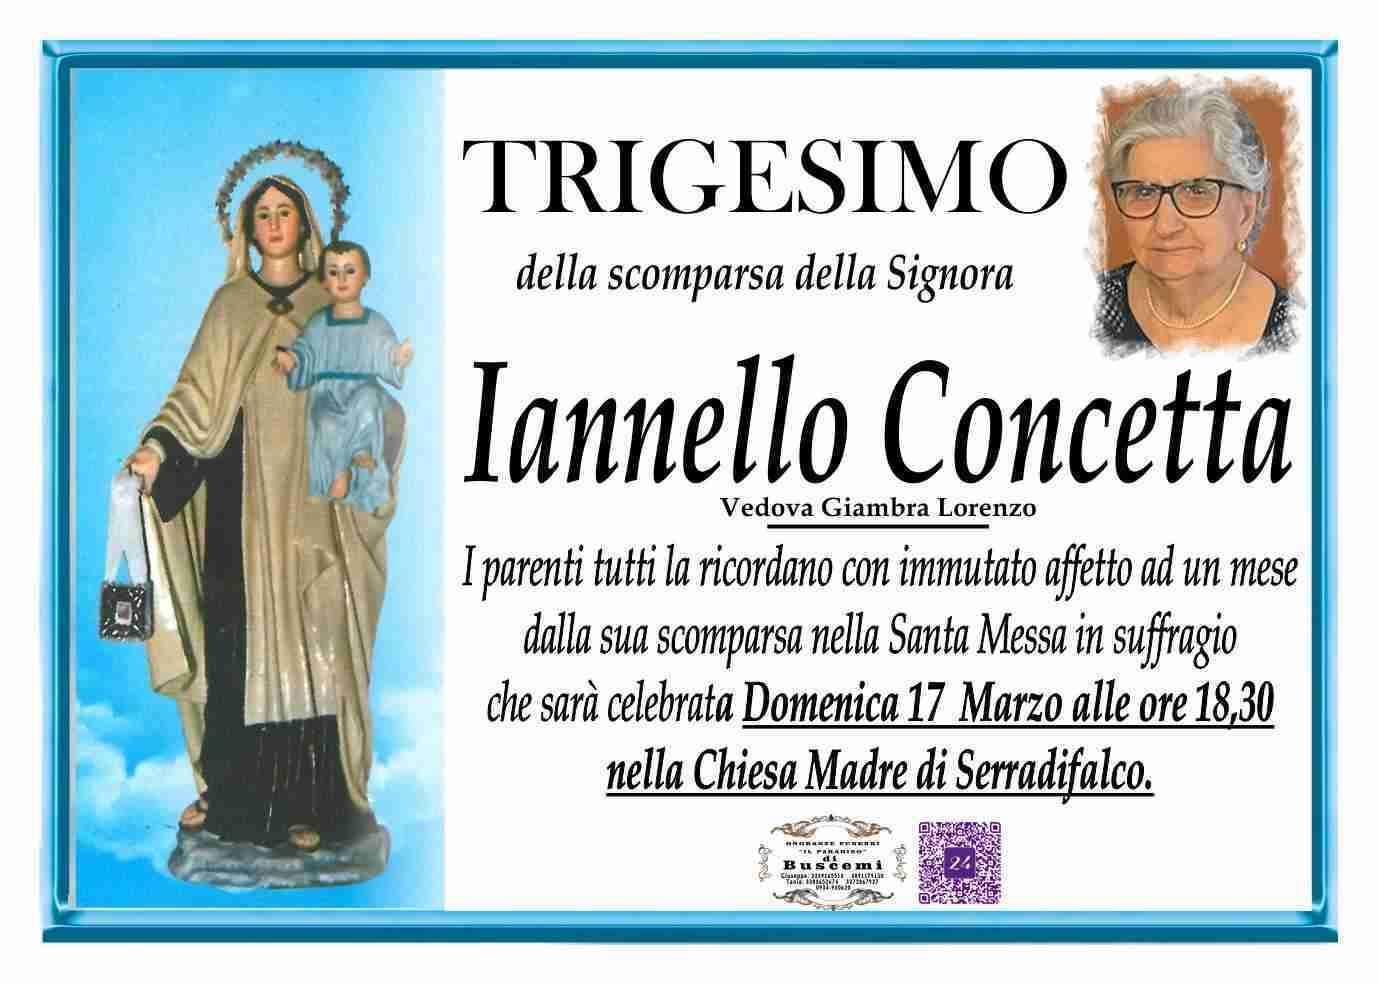 Iannello Concetta